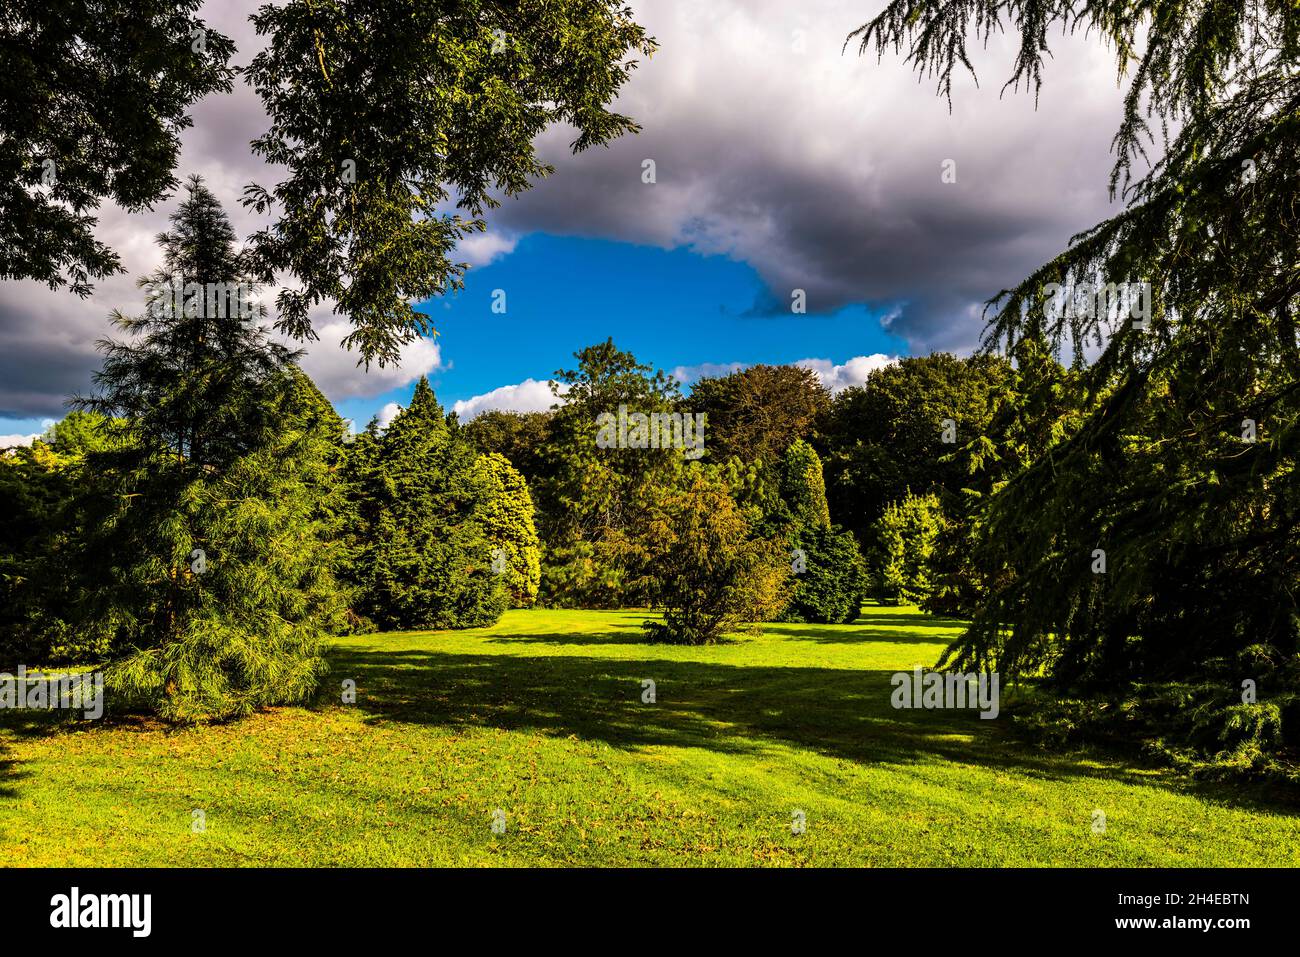 View across the Pinetum Gardens, St Austell, Cornwall, UK Stock Photo